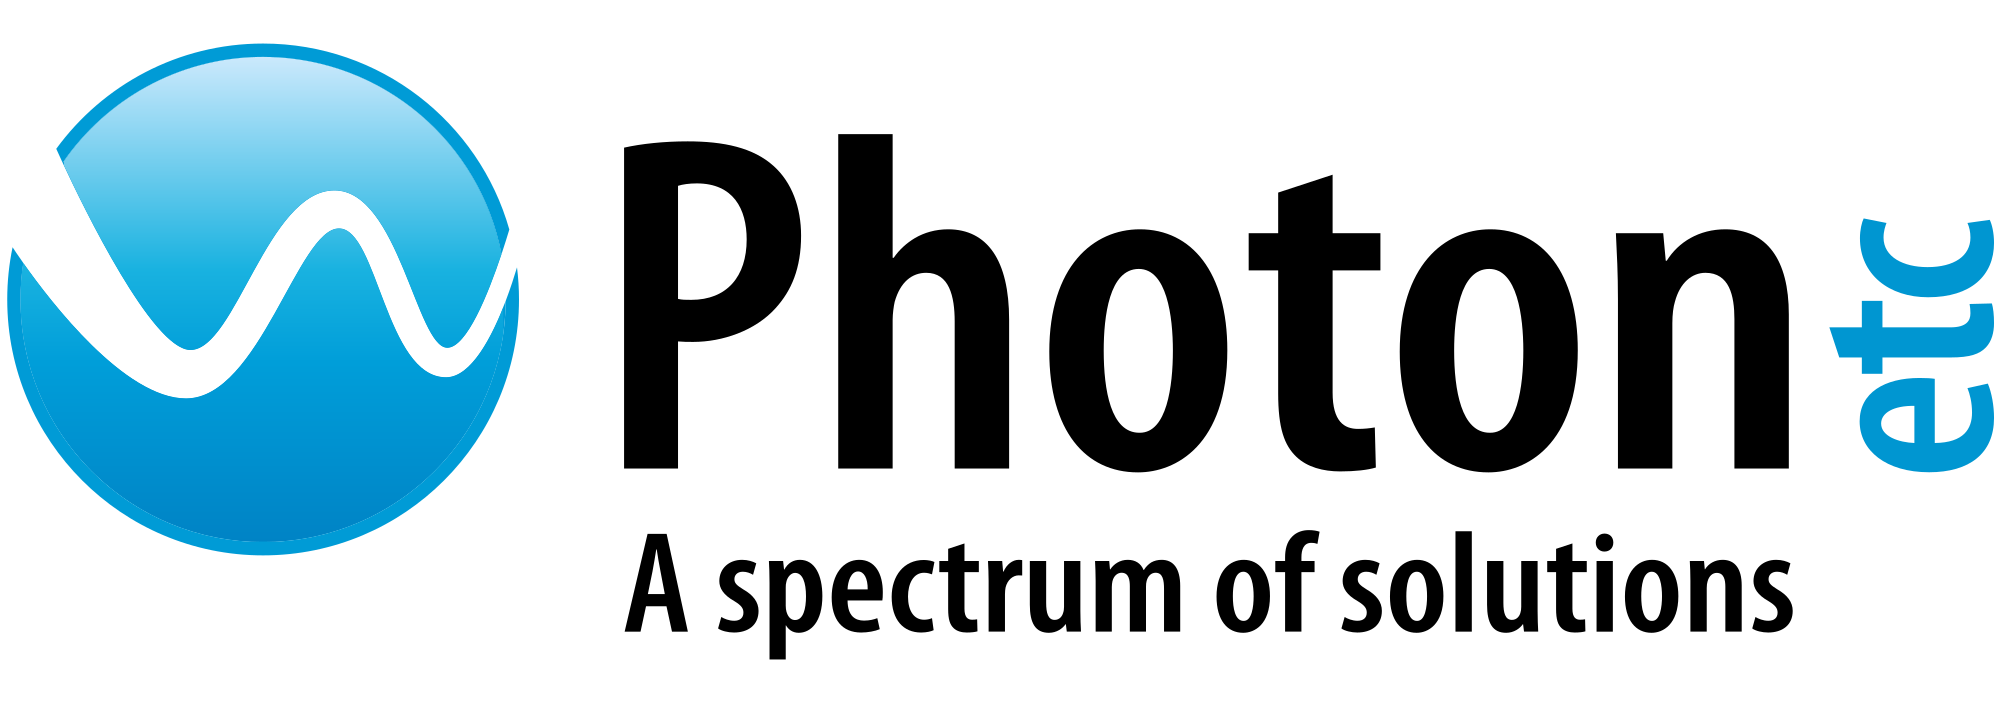 Photon etc logo.